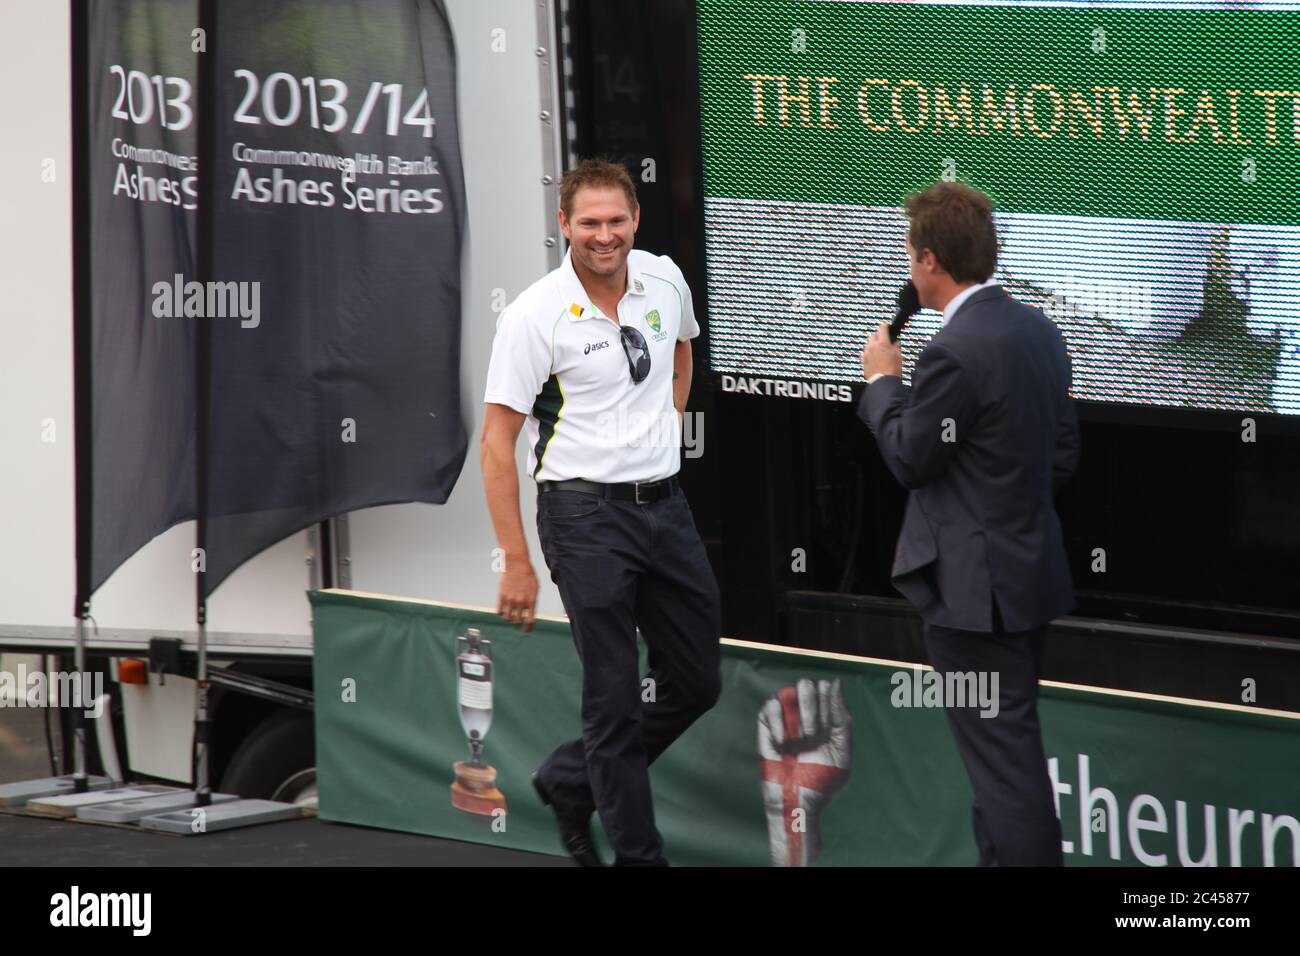 Der australische Cricketspieler Ryan Harris wird auf der Bühne vor dem Sydney Opera House interviewt, als die Aussies ihren Ashes Test Sieg 5-0 feierten Stockfoto